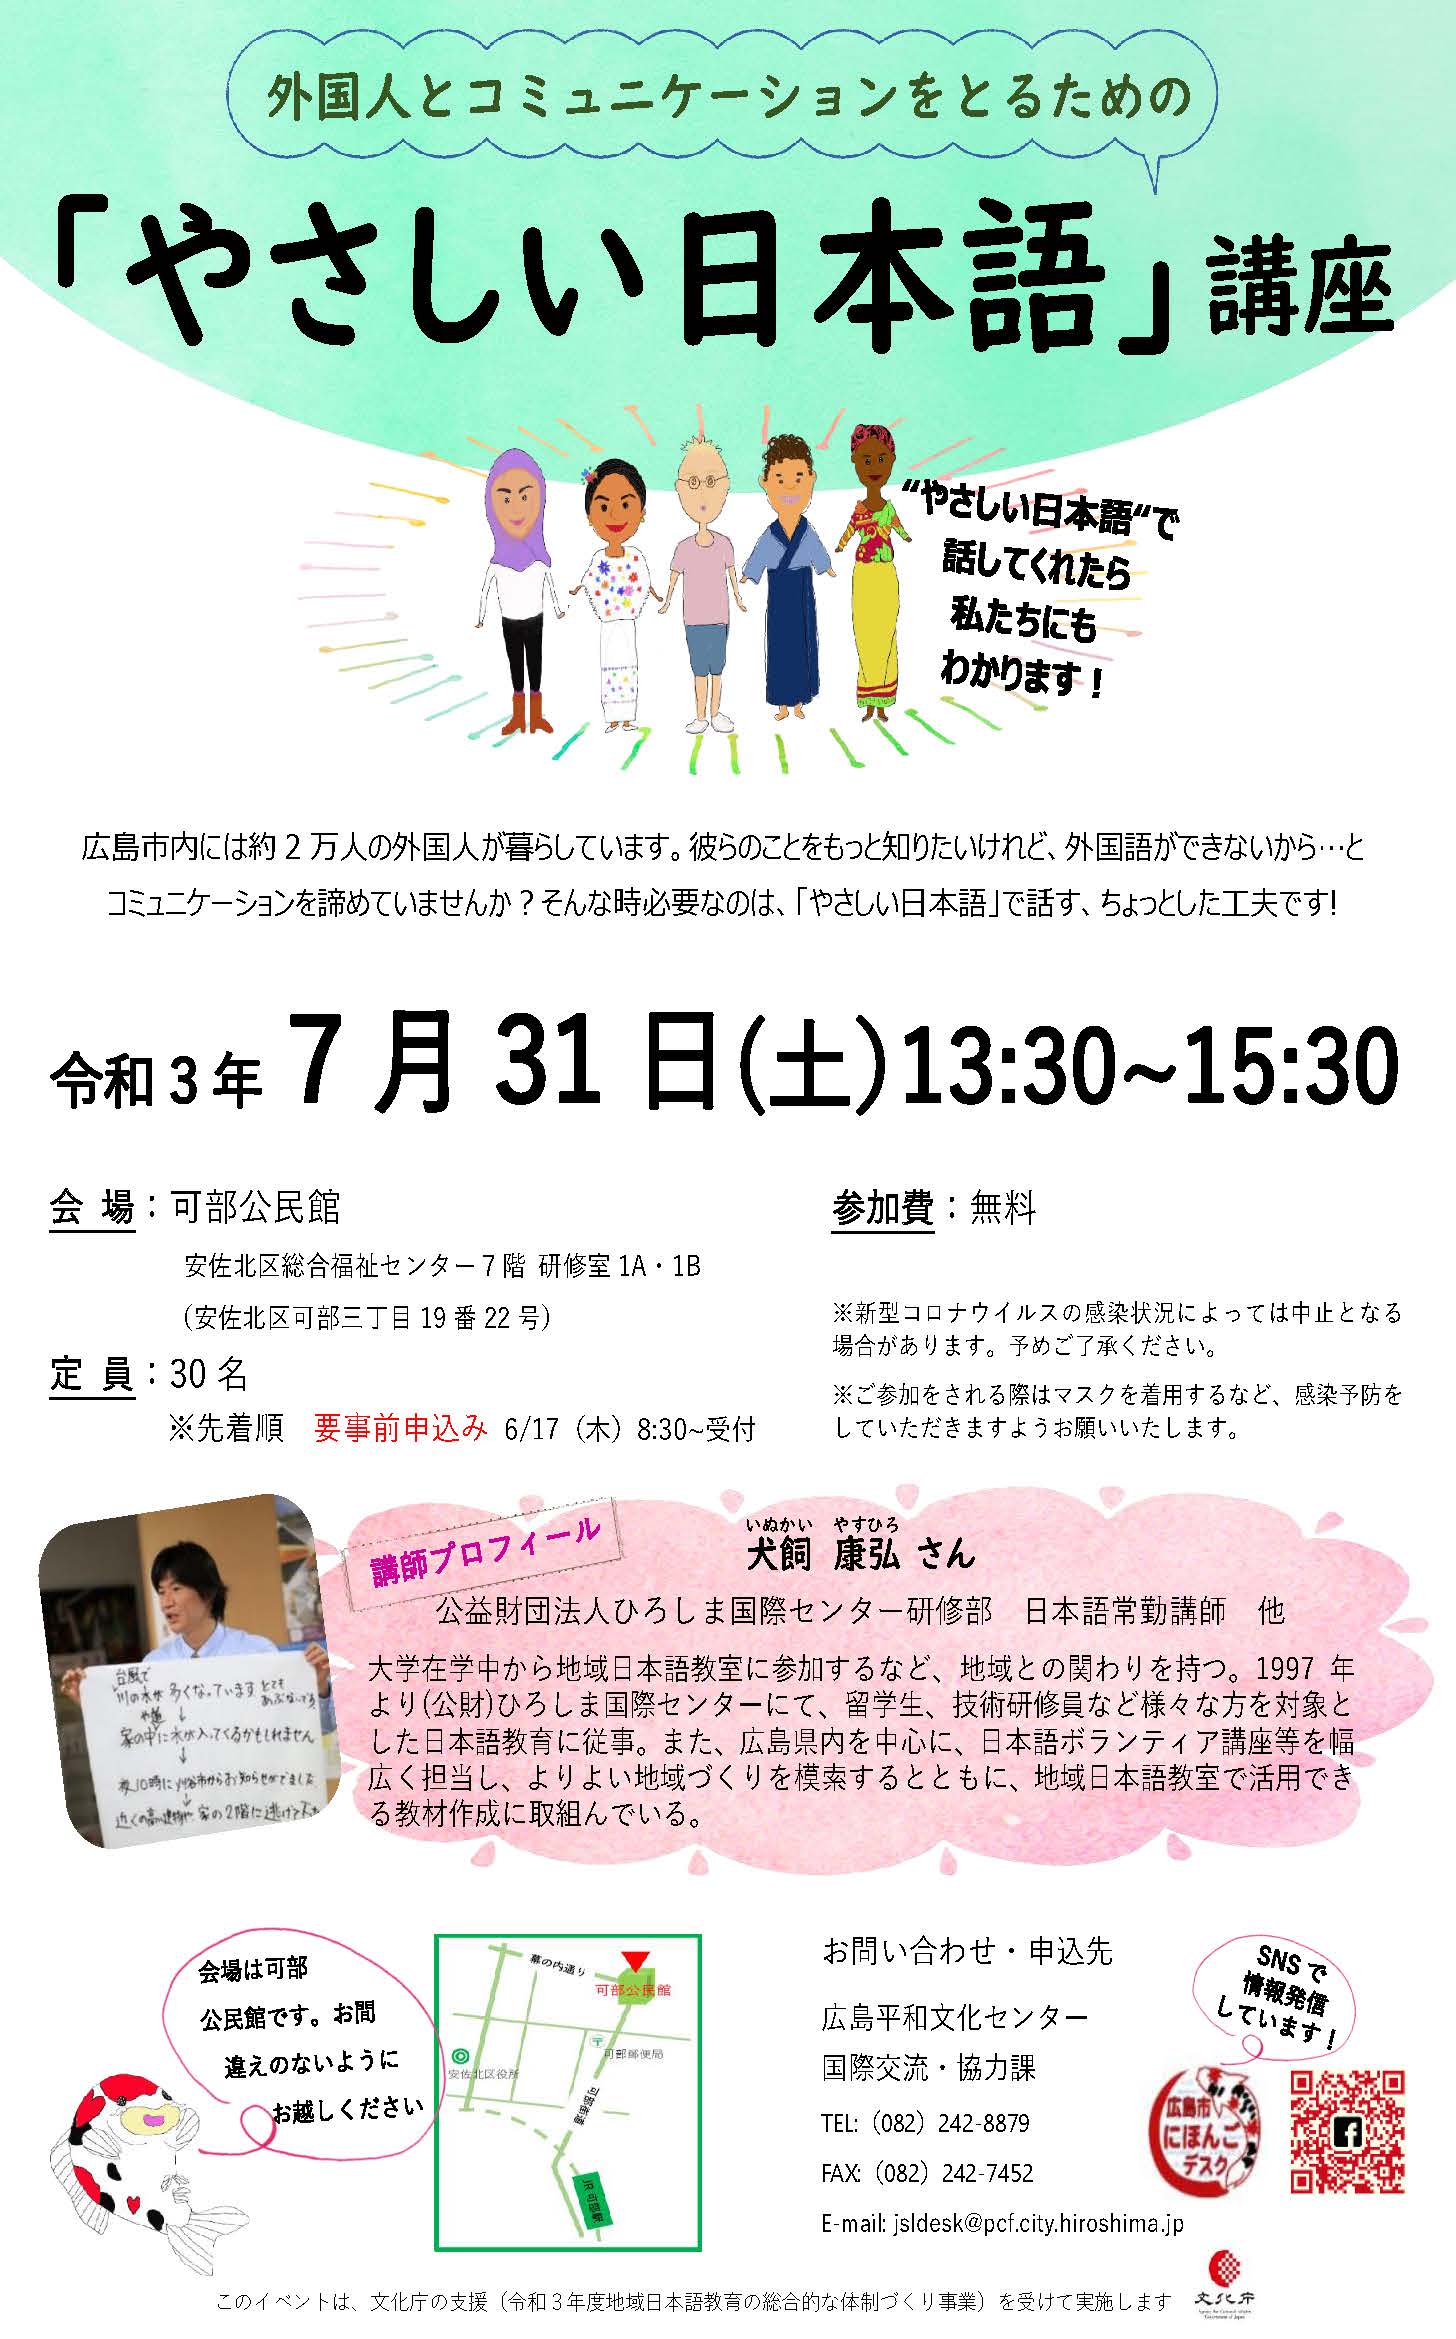 外国人とコミュニケーションをとるための やさしい日本語 講座を開催します 公益財団法人 広島平和文化センター 国際市民交流課